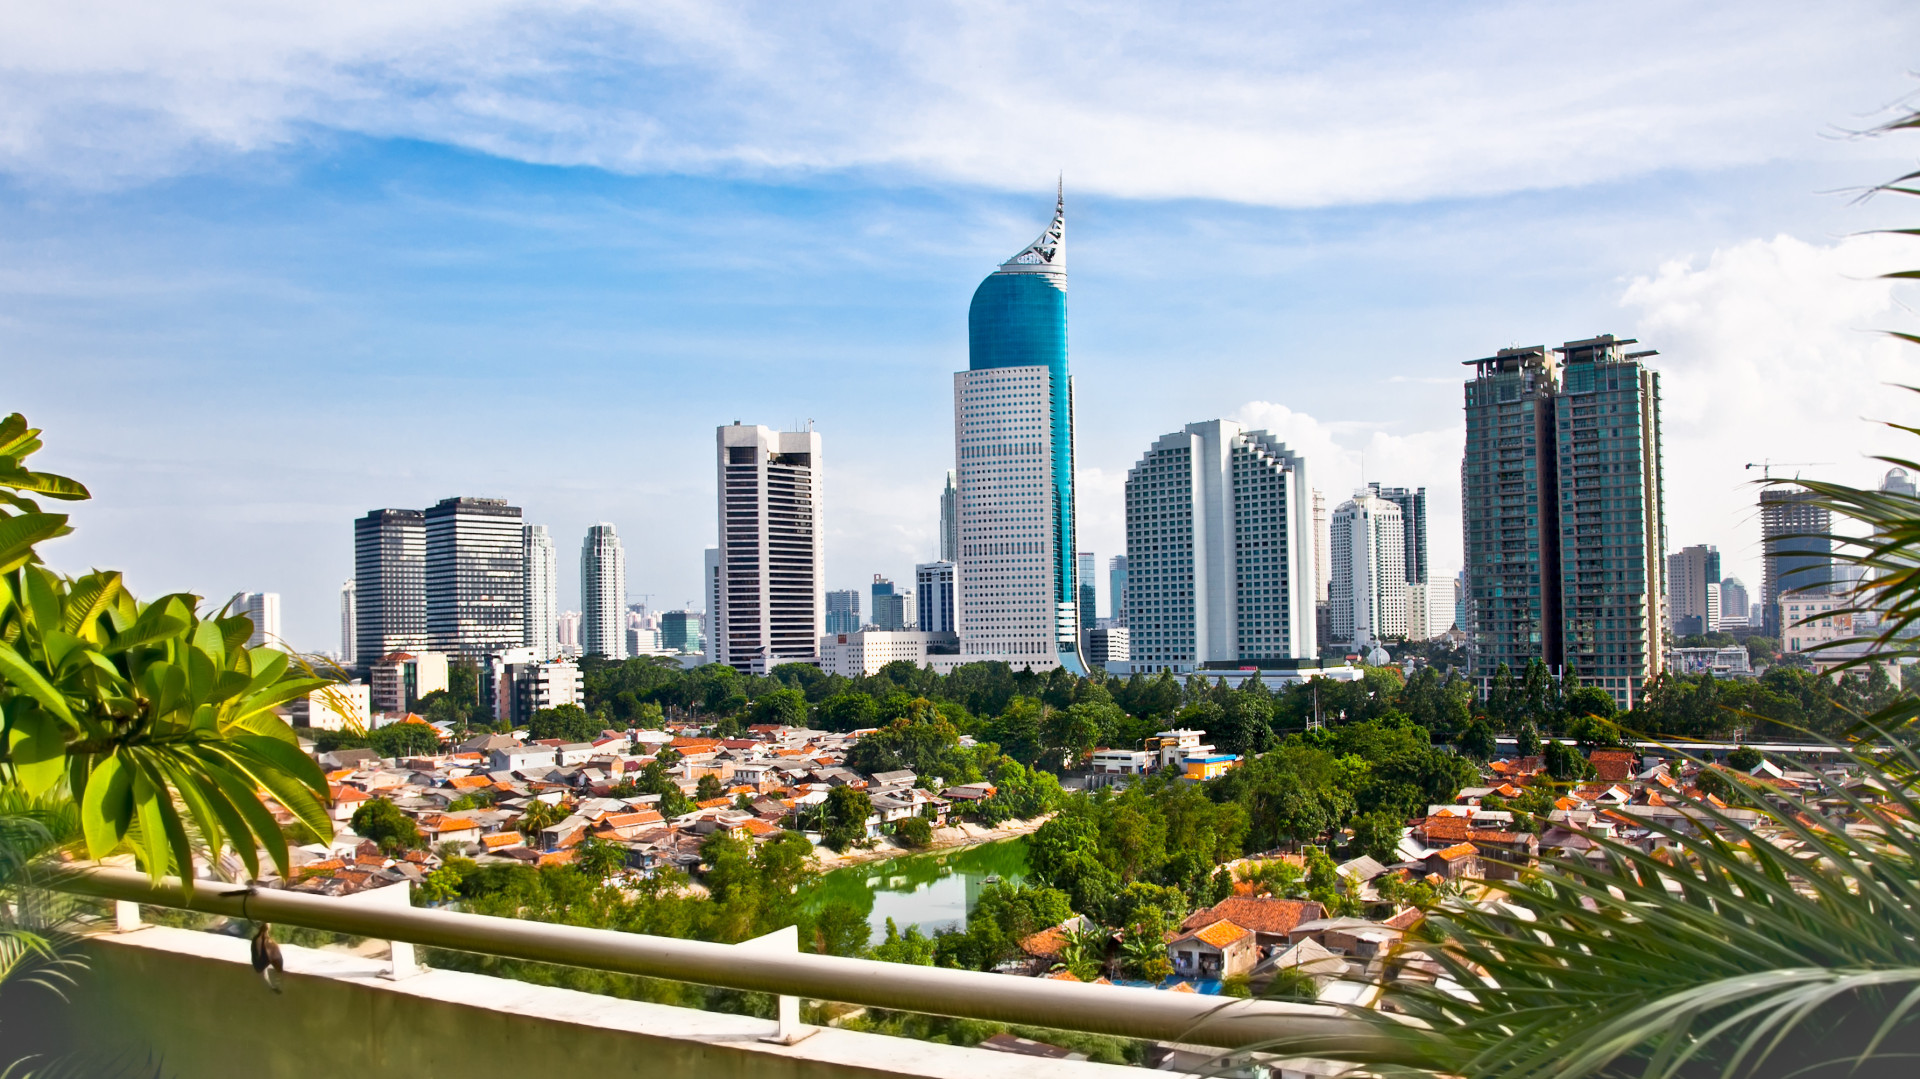 La surface métropolitaine de la capitale d'Indonésie est la plus vaste au monde. Son bâtiment le plus caractéristique est le Wisma 46, le plus haut gratte-ciel du pays.<p>Tu pourrais aussi aimer:<a href="https://www.starsinsider.com/n/384385?utm_source=msn.com&utm_medium=display&utm_campaign=referral_description&utm_content=217079v3fr-ca"> Photos d'animaux sauvages prises au bon moment</a></p>